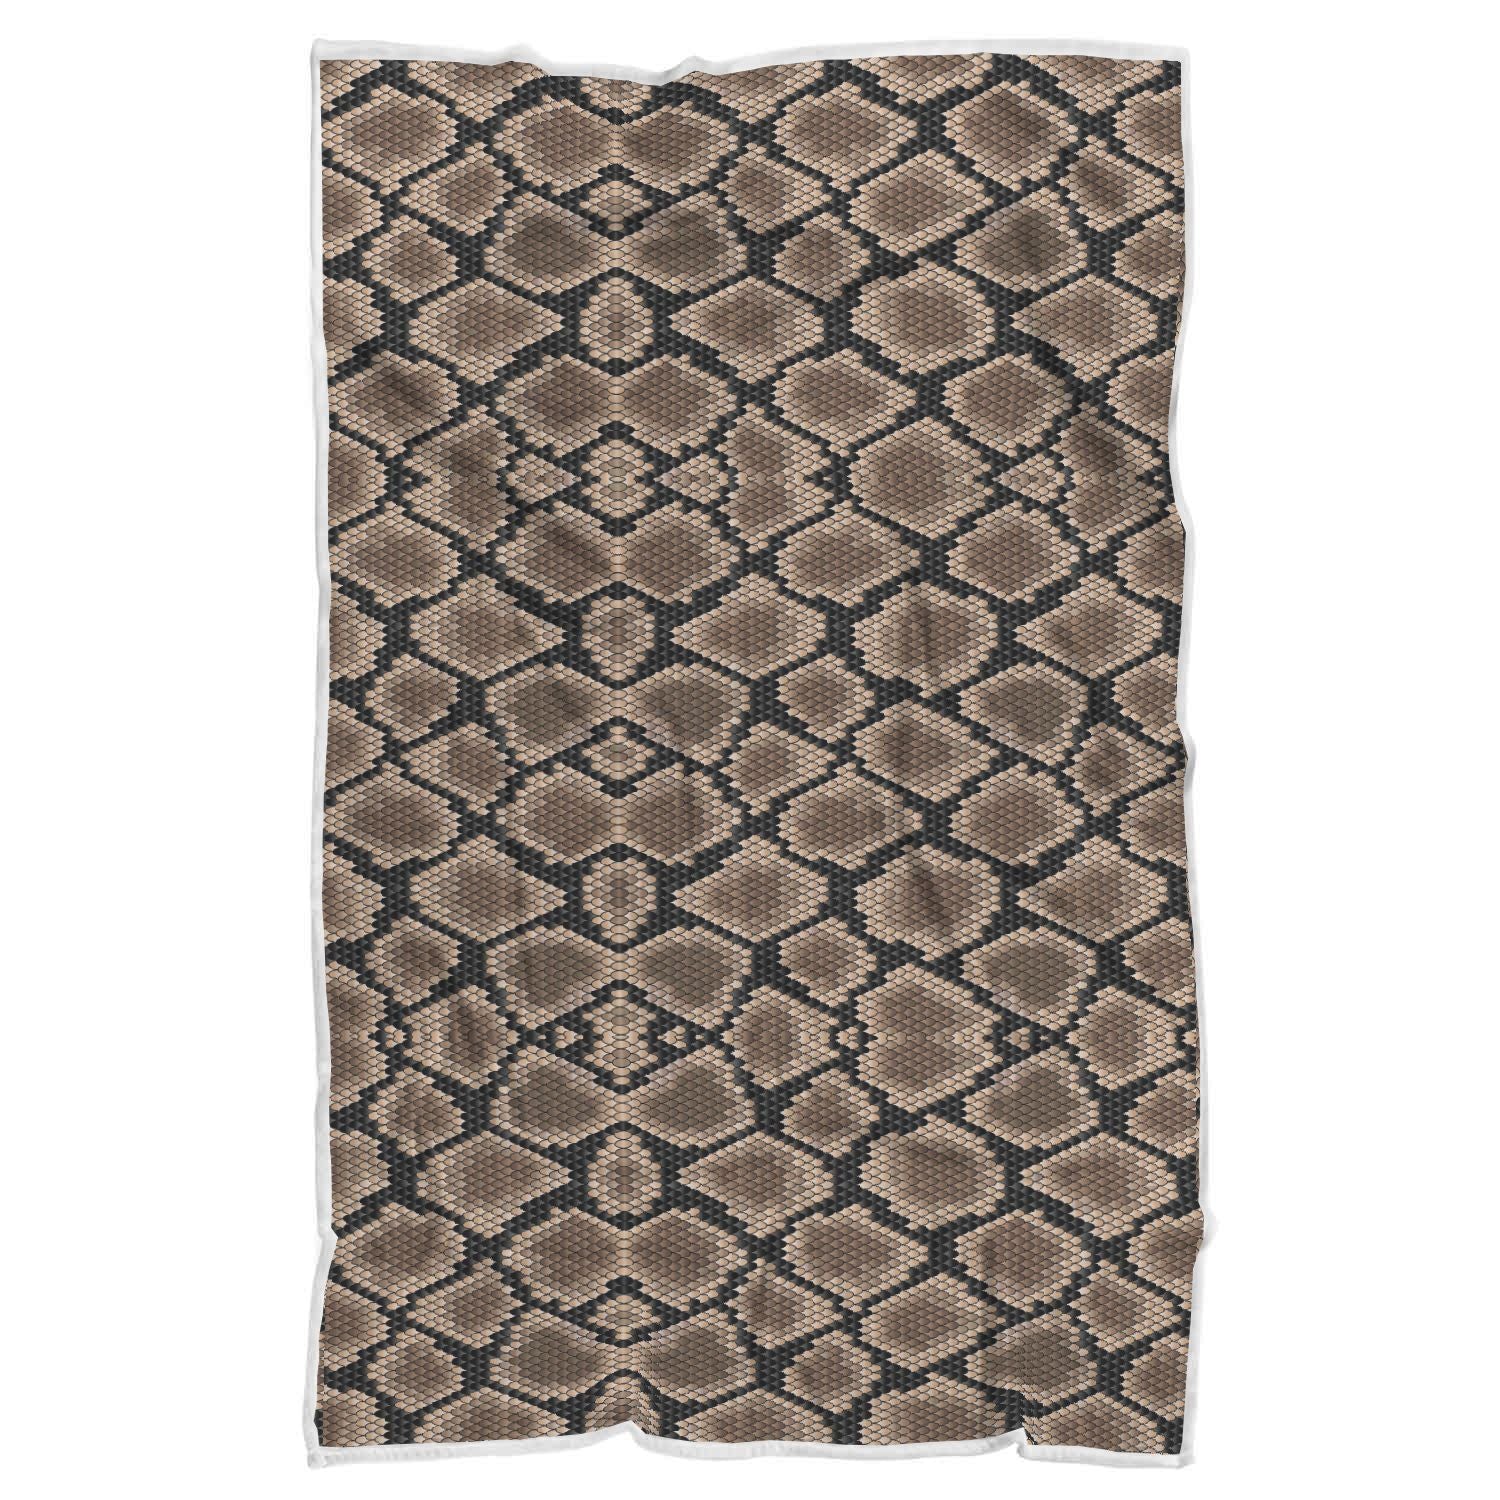 Snakeskin Python Skin Pattern Print Throw Blanket-grizzshop